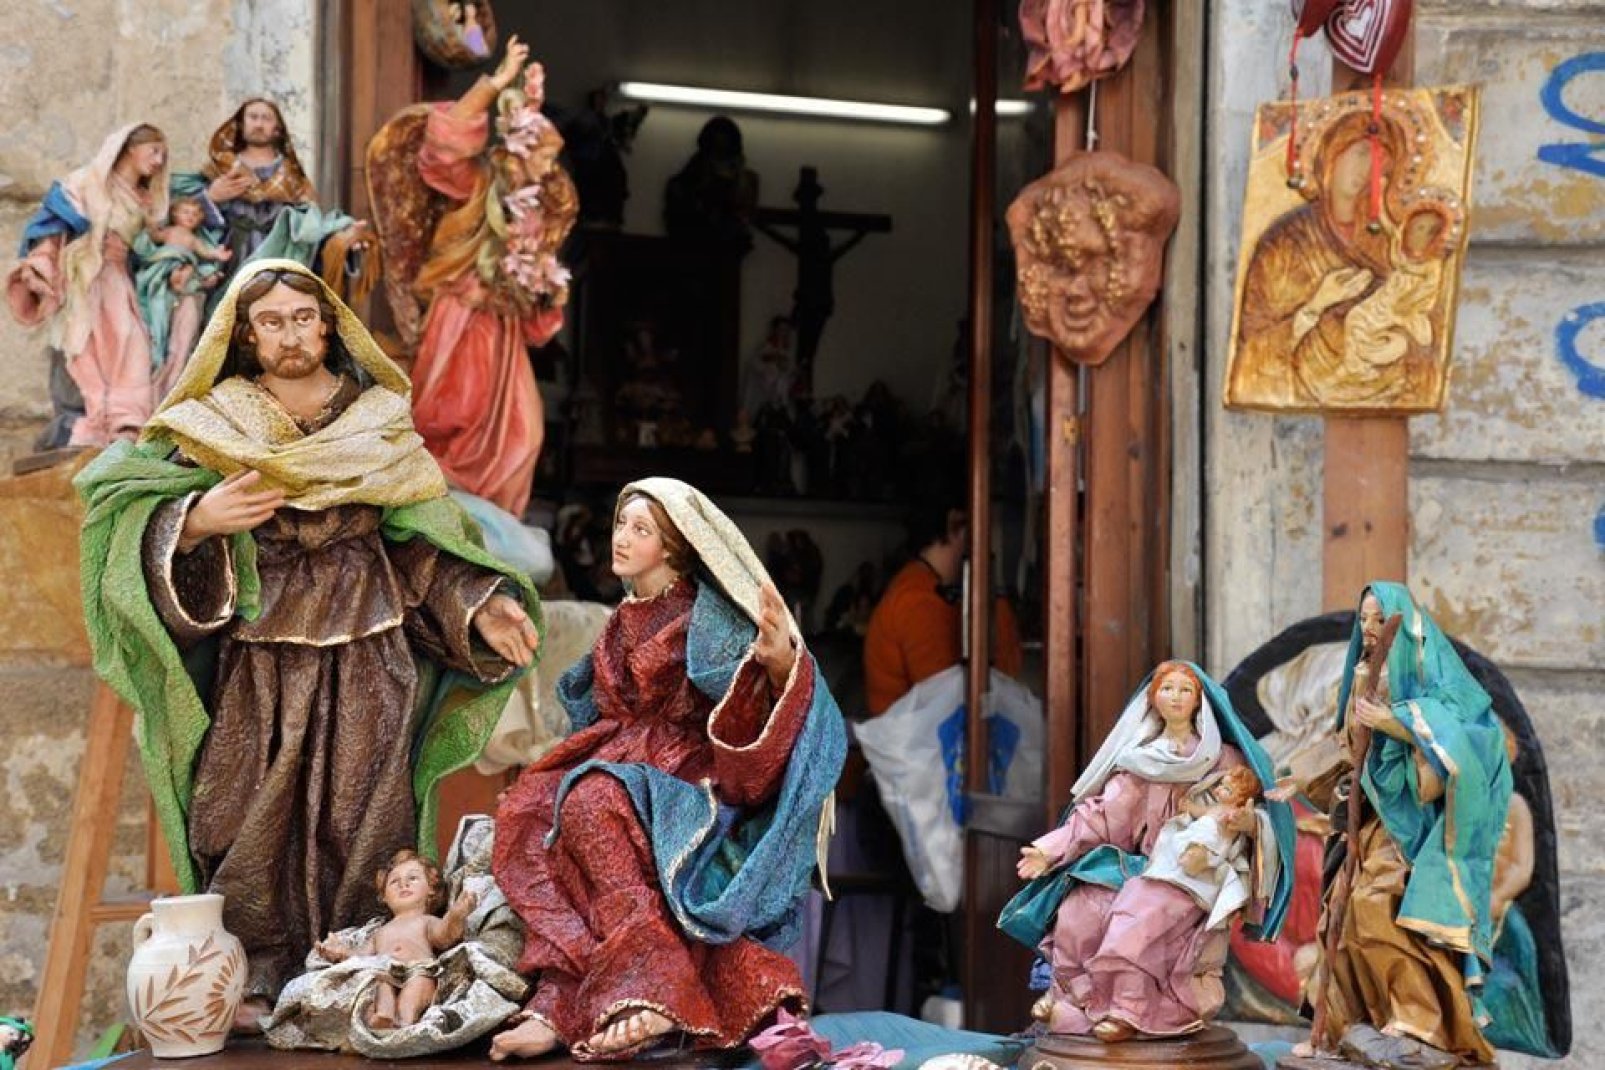 Todos los años, en diciembre, puede visitarse la exposición anual de pesebres en el monasterio de Teatini.